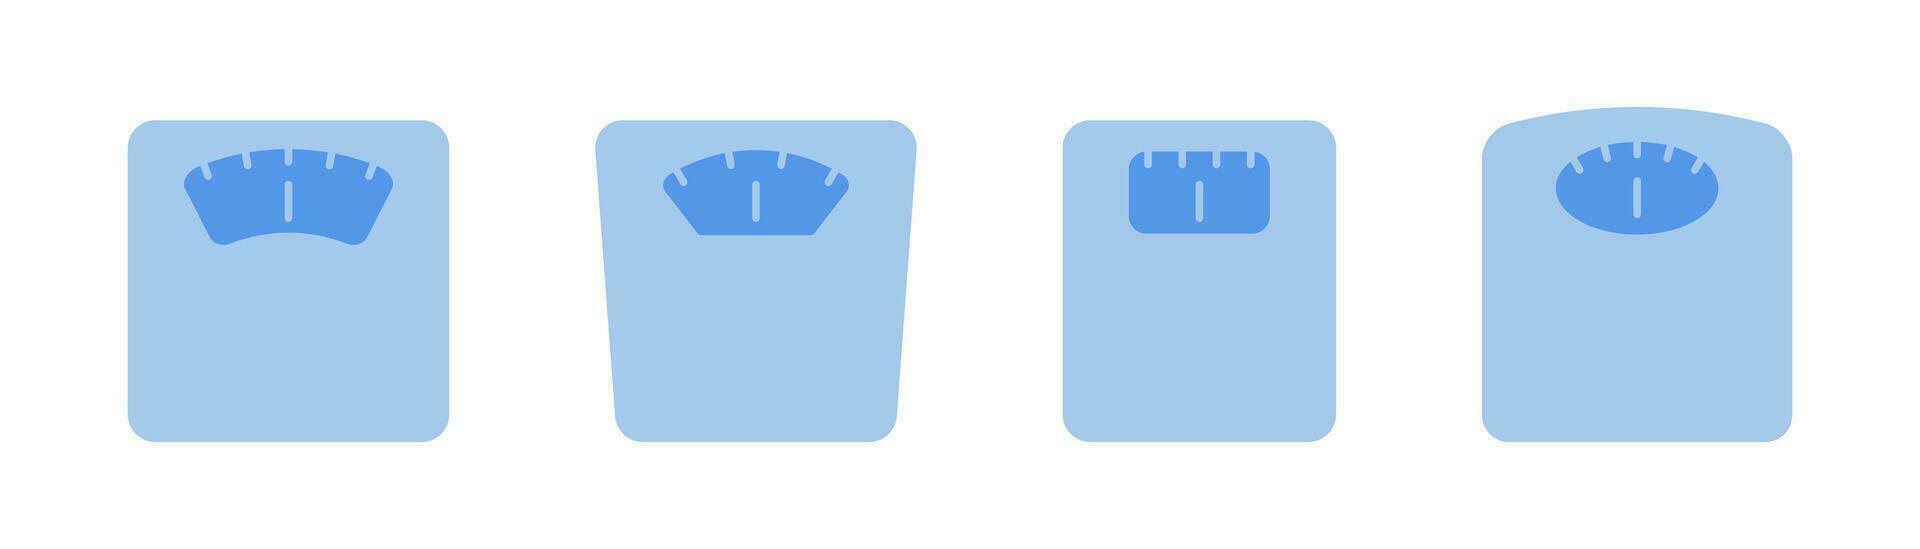 poids échelle icône. salle de bains échelle dans plat. échelle mesure dans bleu. équilibre symbole dans plat. Stock vecteur